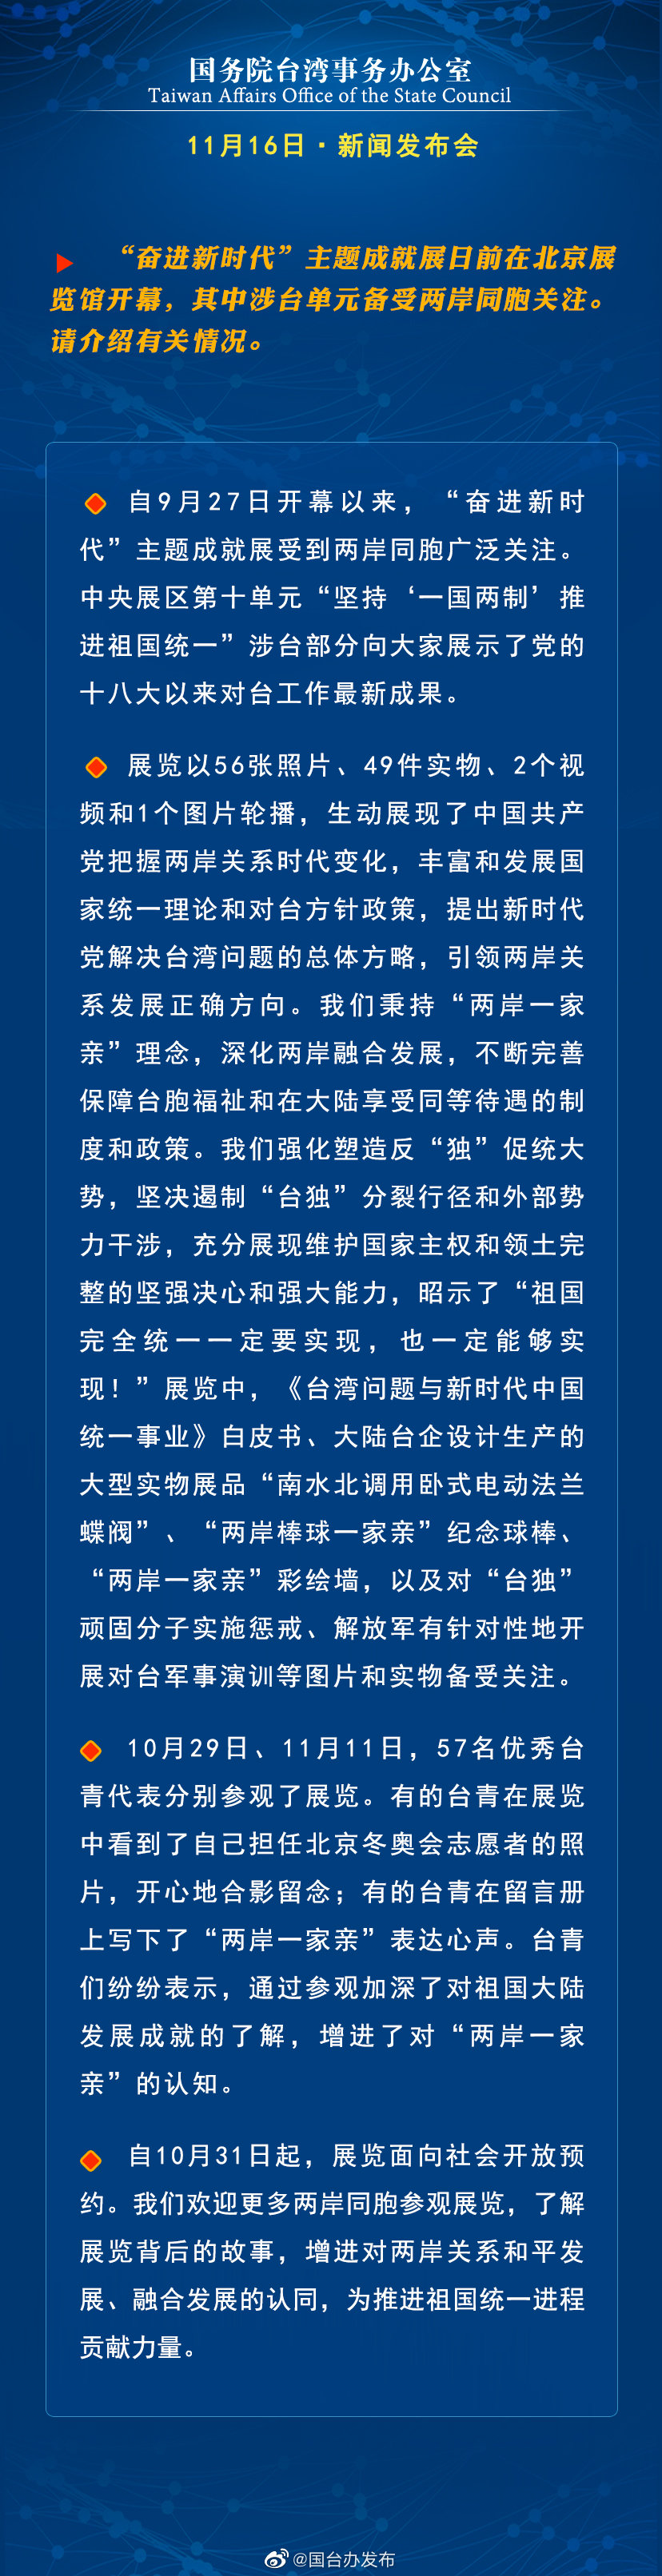 国务院台湾事务办公室11月16日·新闻发布会